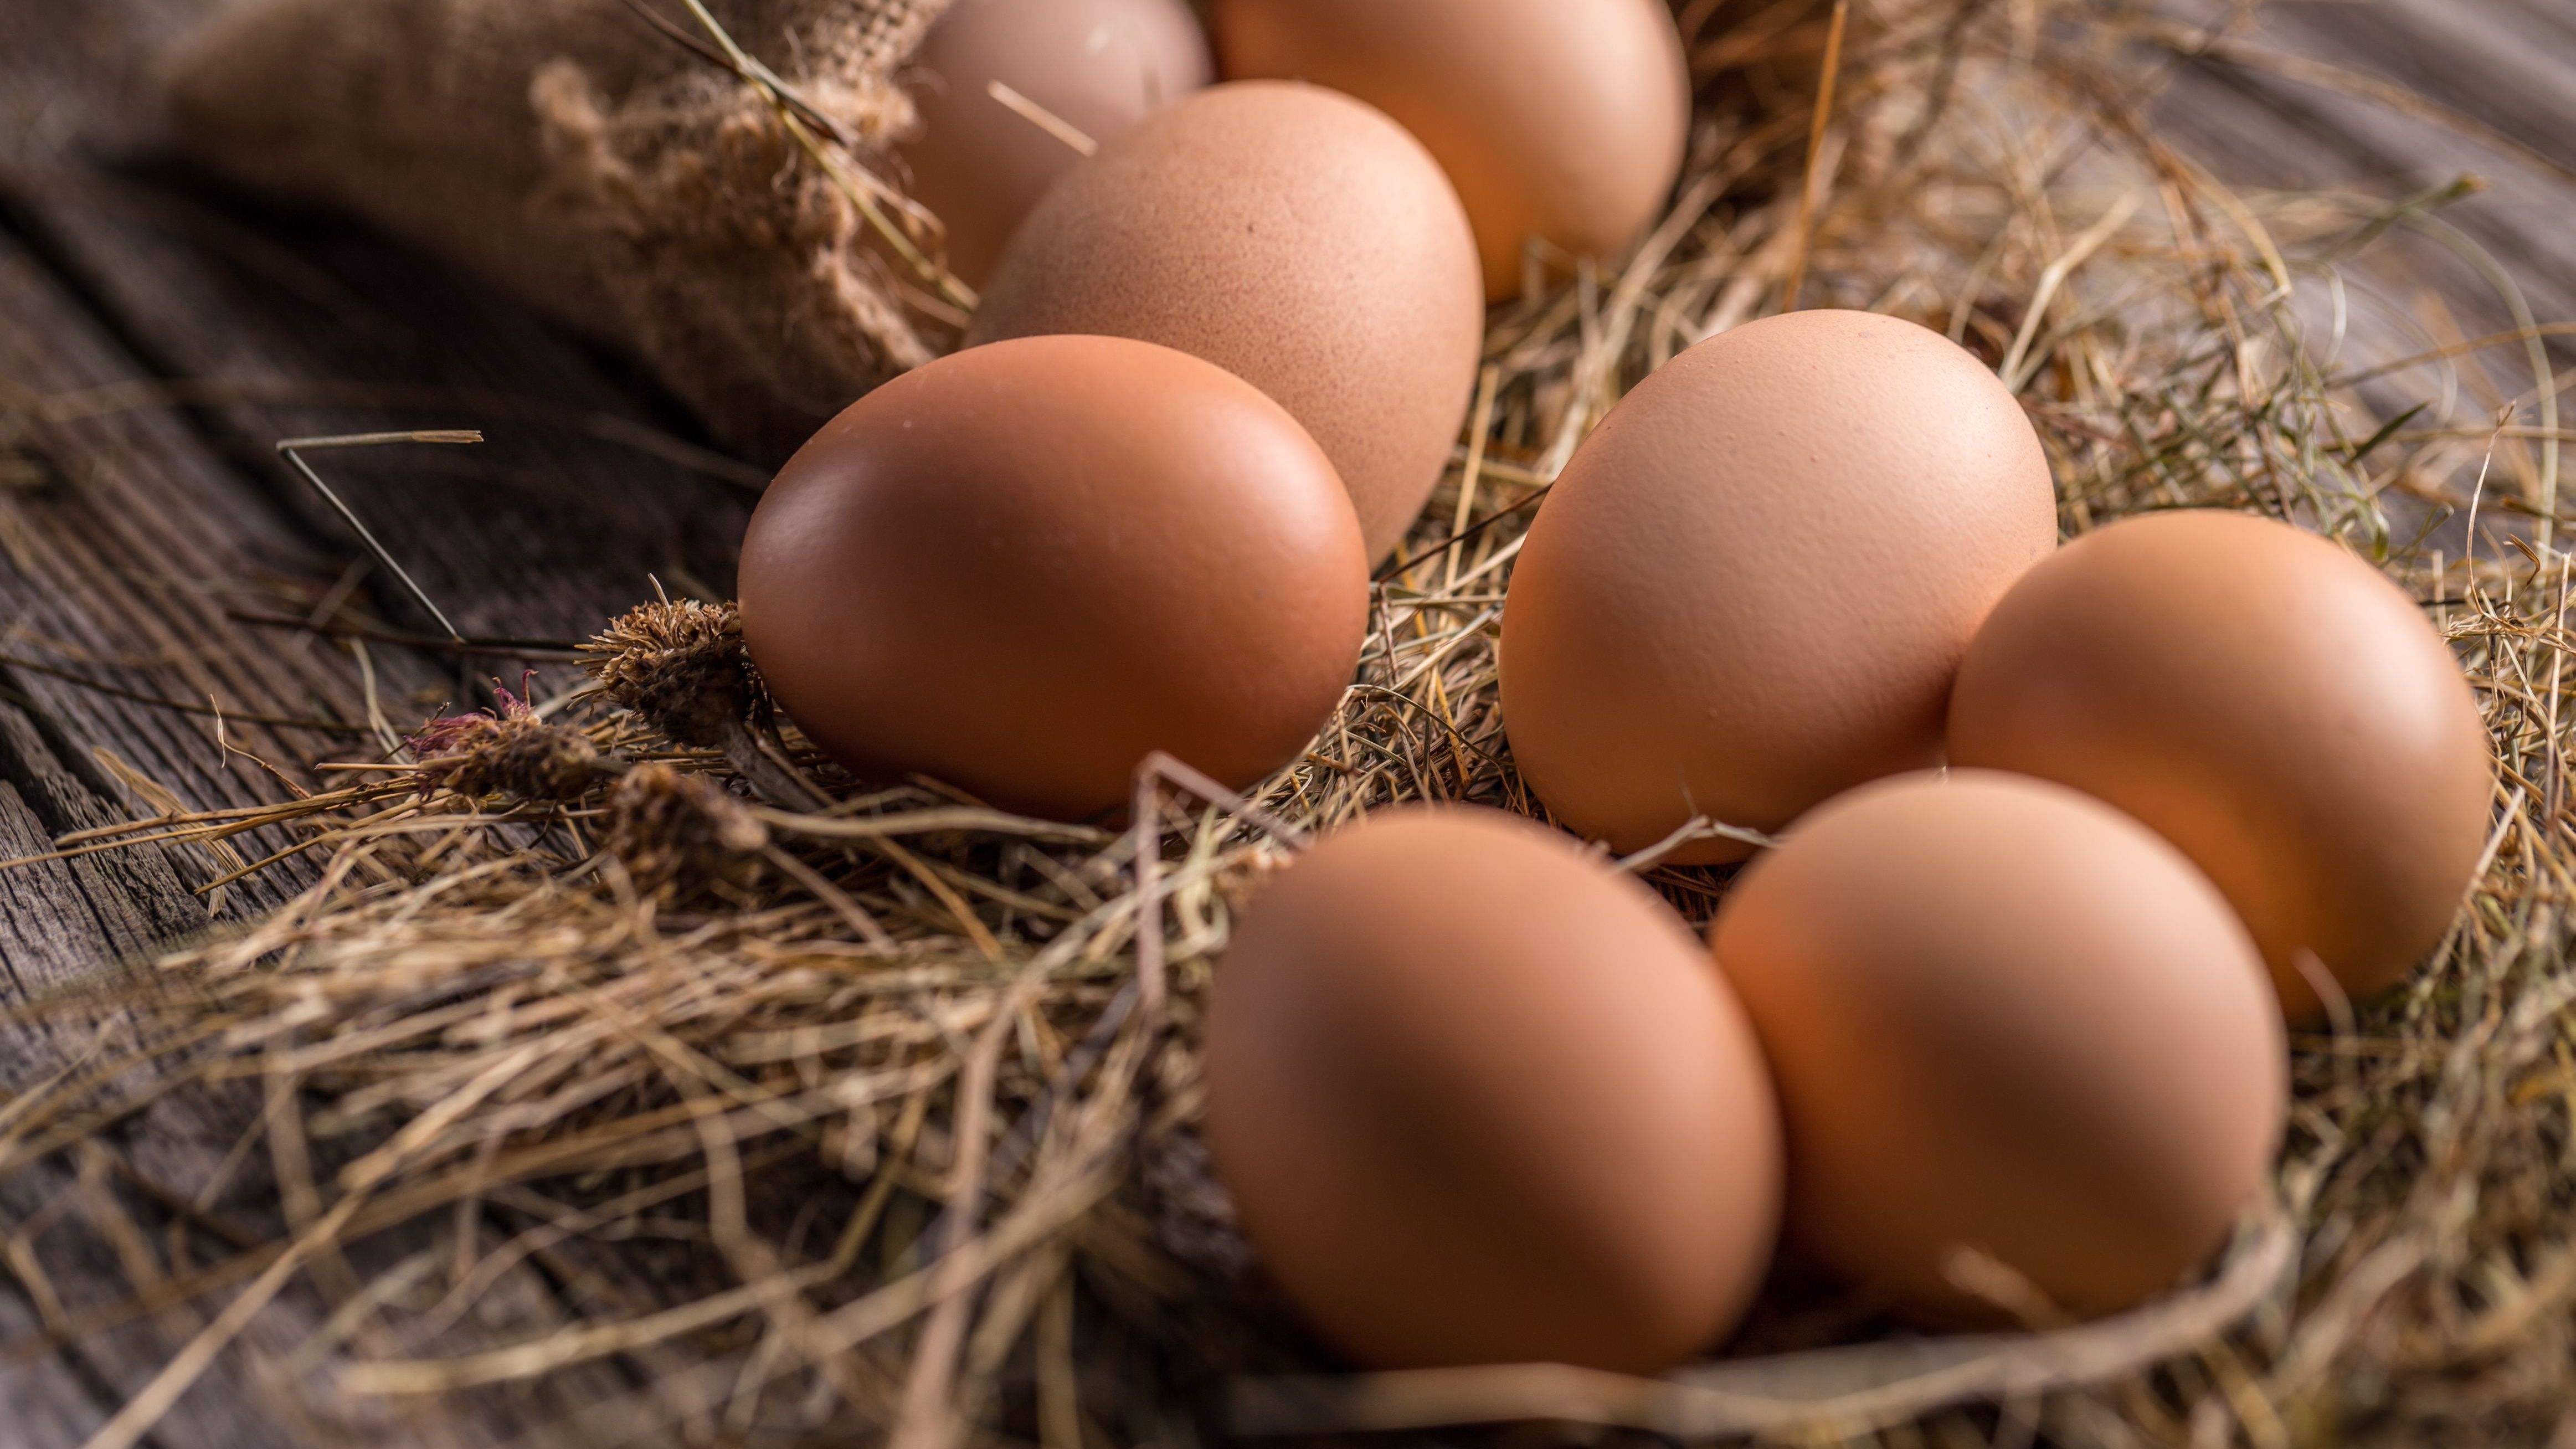 Bei richtiger Lagerung halten auch frische Eier in ihrer Schale deutlich länger durch.